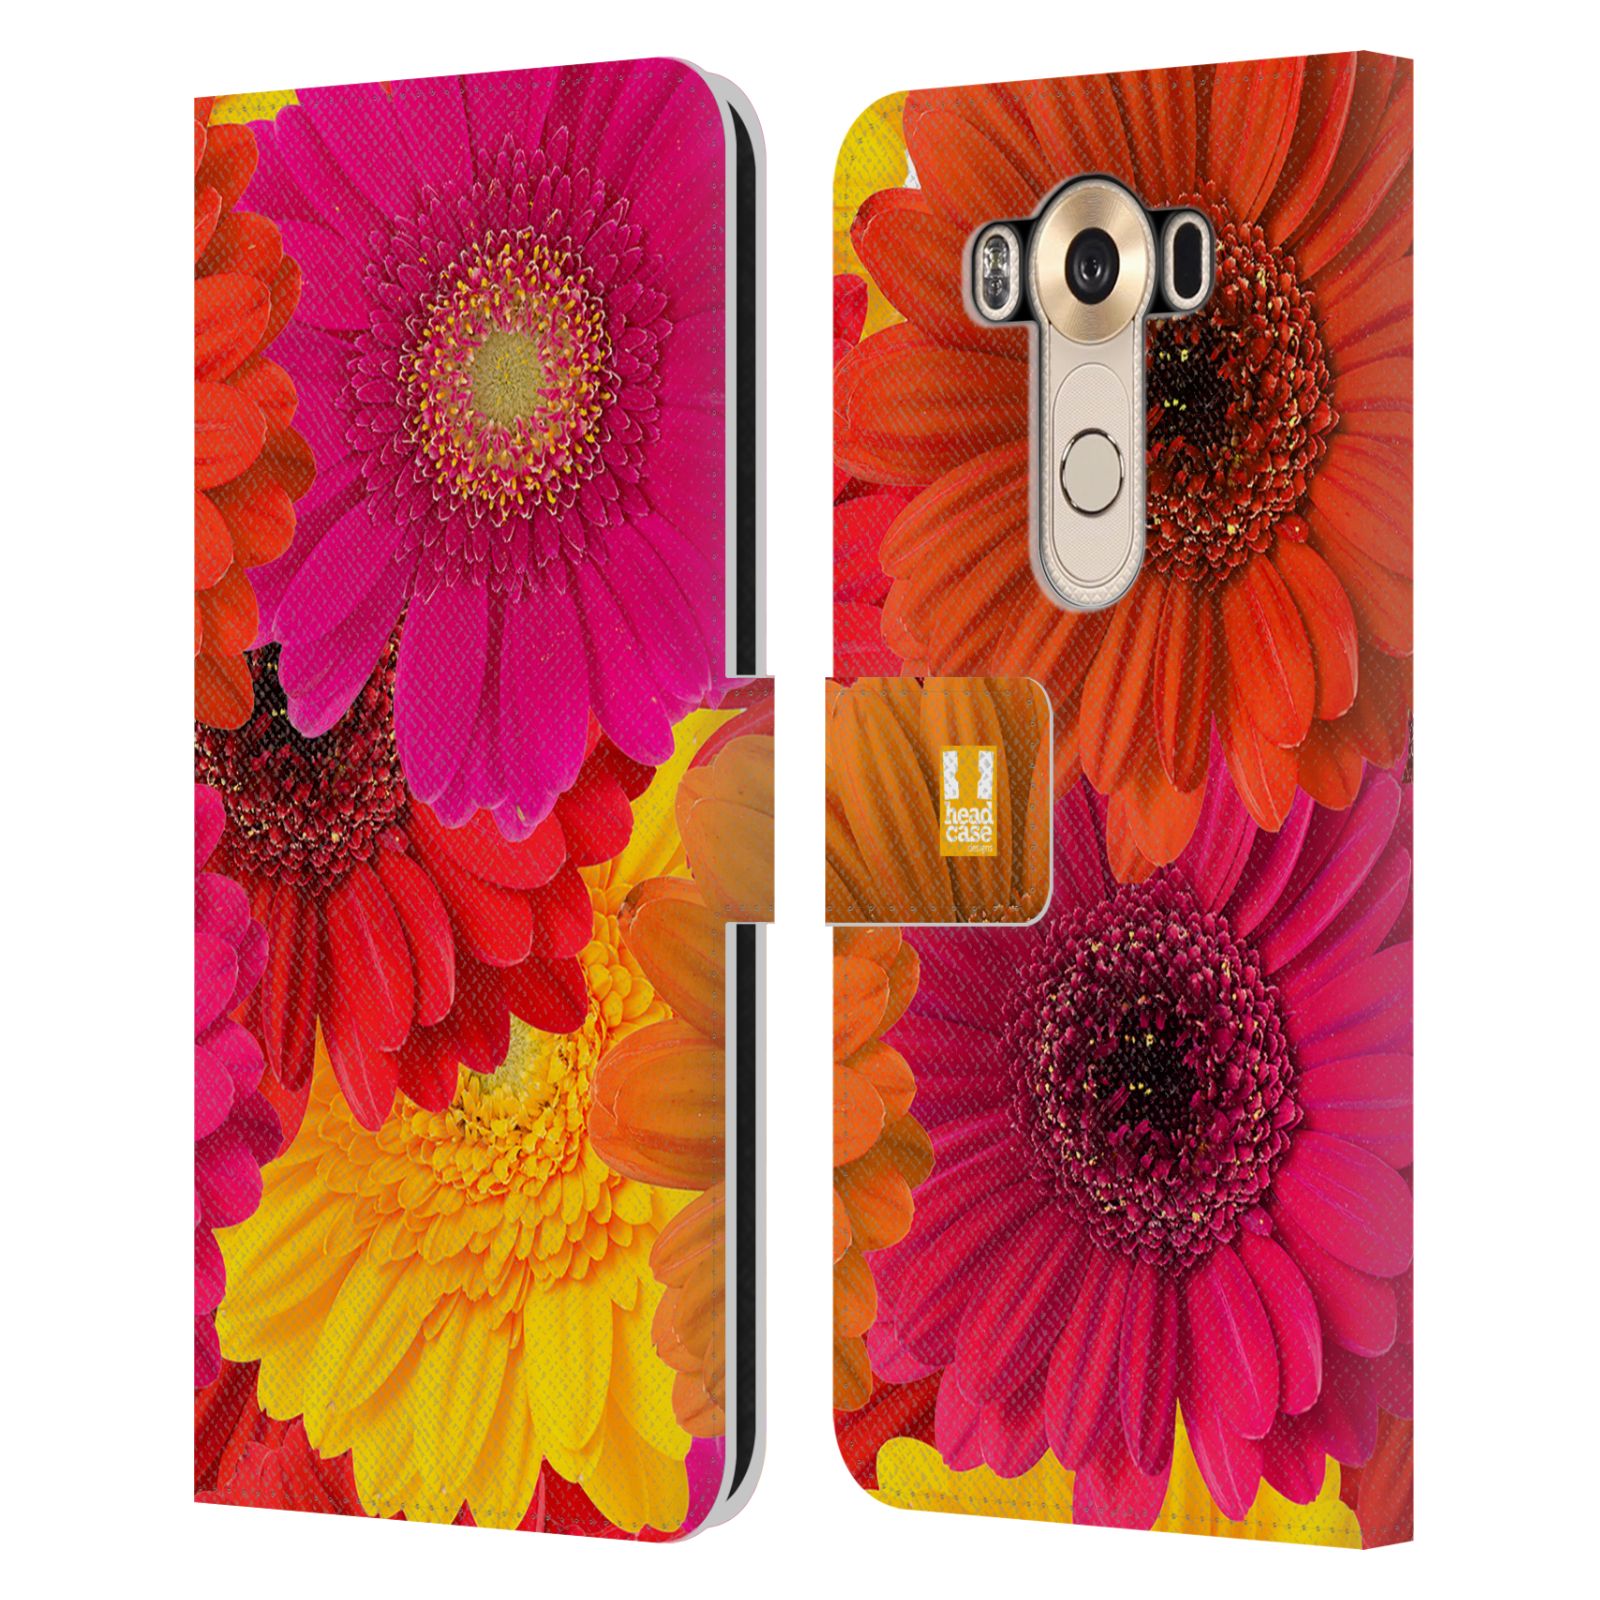 HEAD CASE Flipové pouzdro pro mobil LG V10 květy foto fialová, oranžová GERBERA